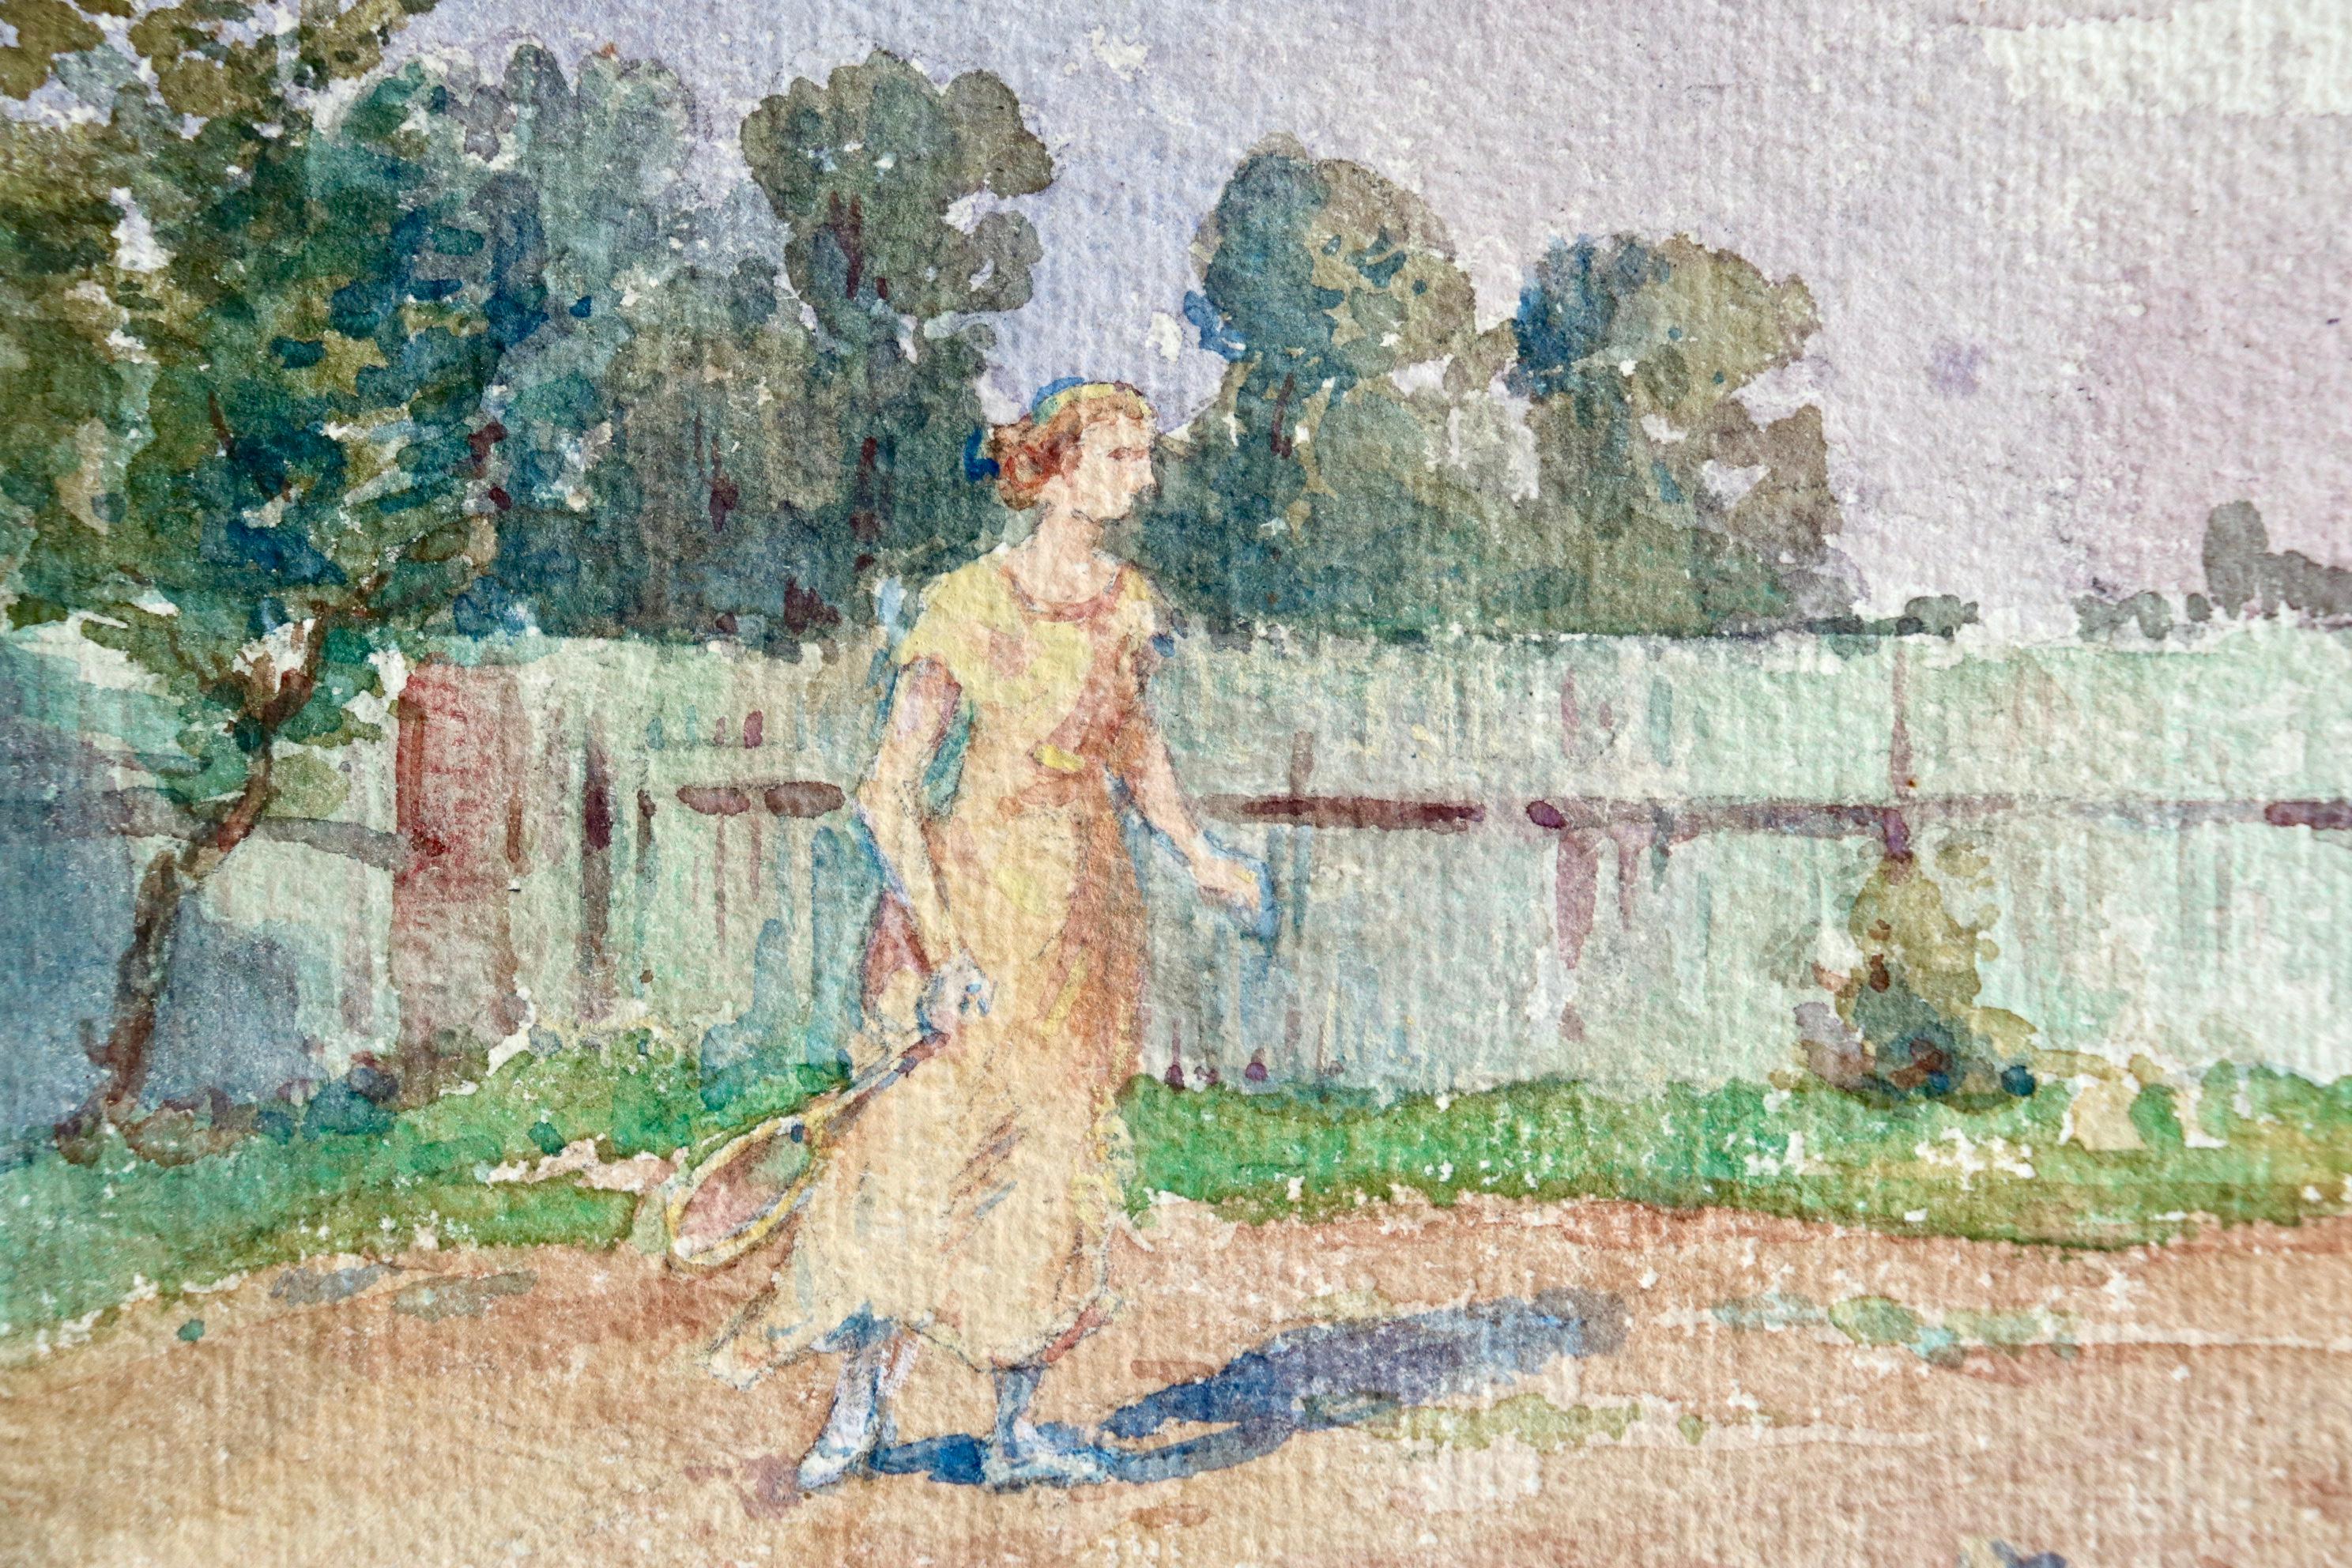 Aquarelle impressionniste « Woman Playing Tennis in Landscape » de H Duhem - Impressionnisme Art par Henri Duhem